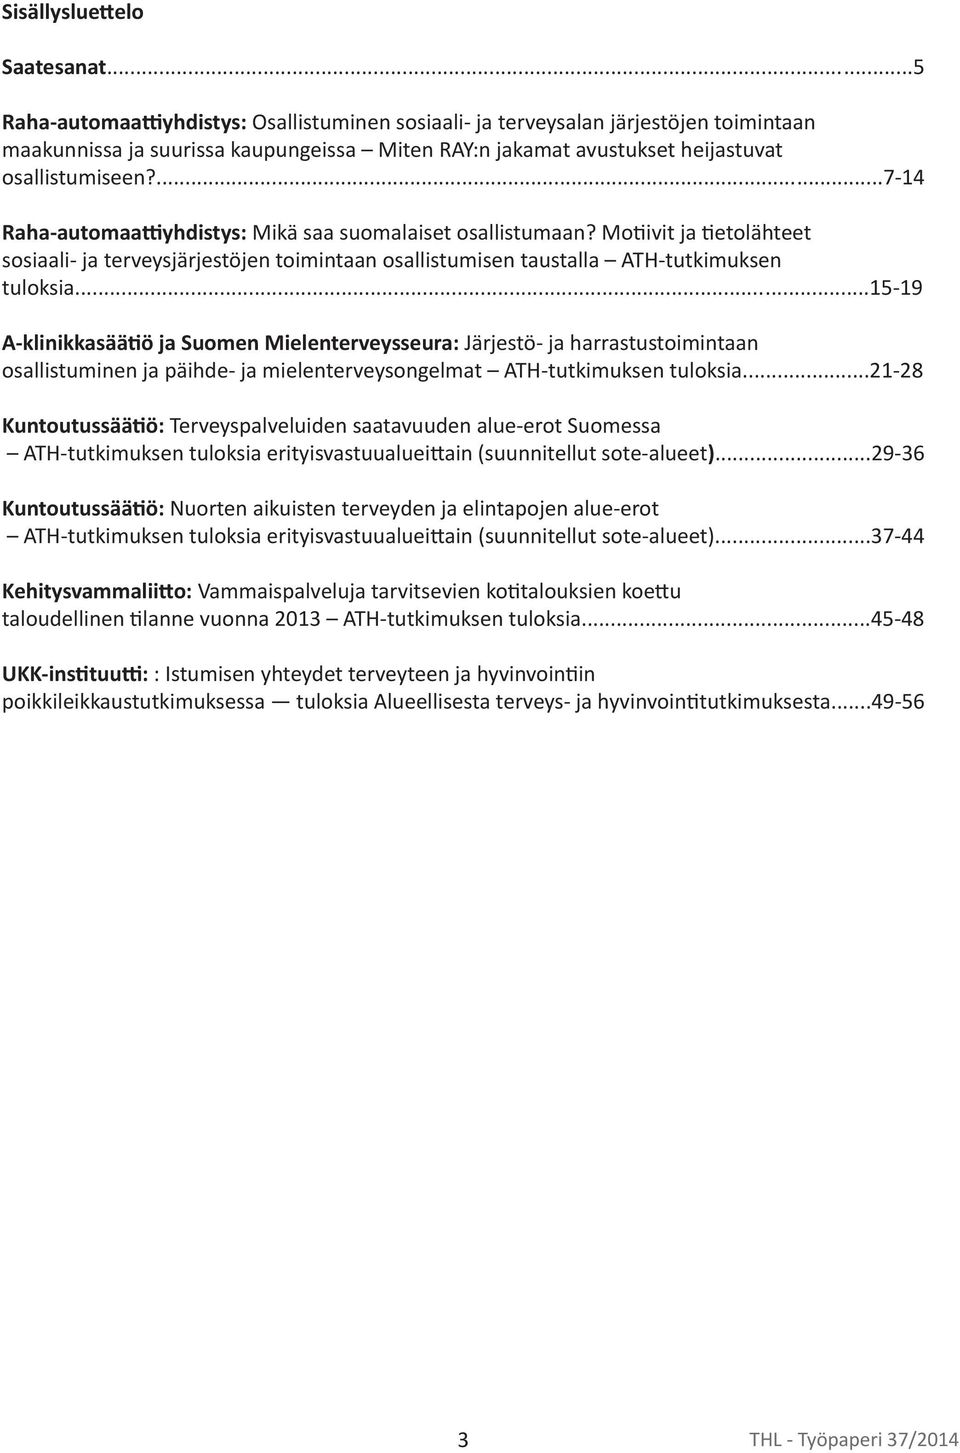 ...7-14 Raha-automaa yhdistys: Mikä saa suomalaiset osallistumaan? Mo ivit ja etolähteet sosiaali- ja terveysjärjestöjen toimintaan osallistumisen taustalla ATH-tutkimuksen tuloksia.